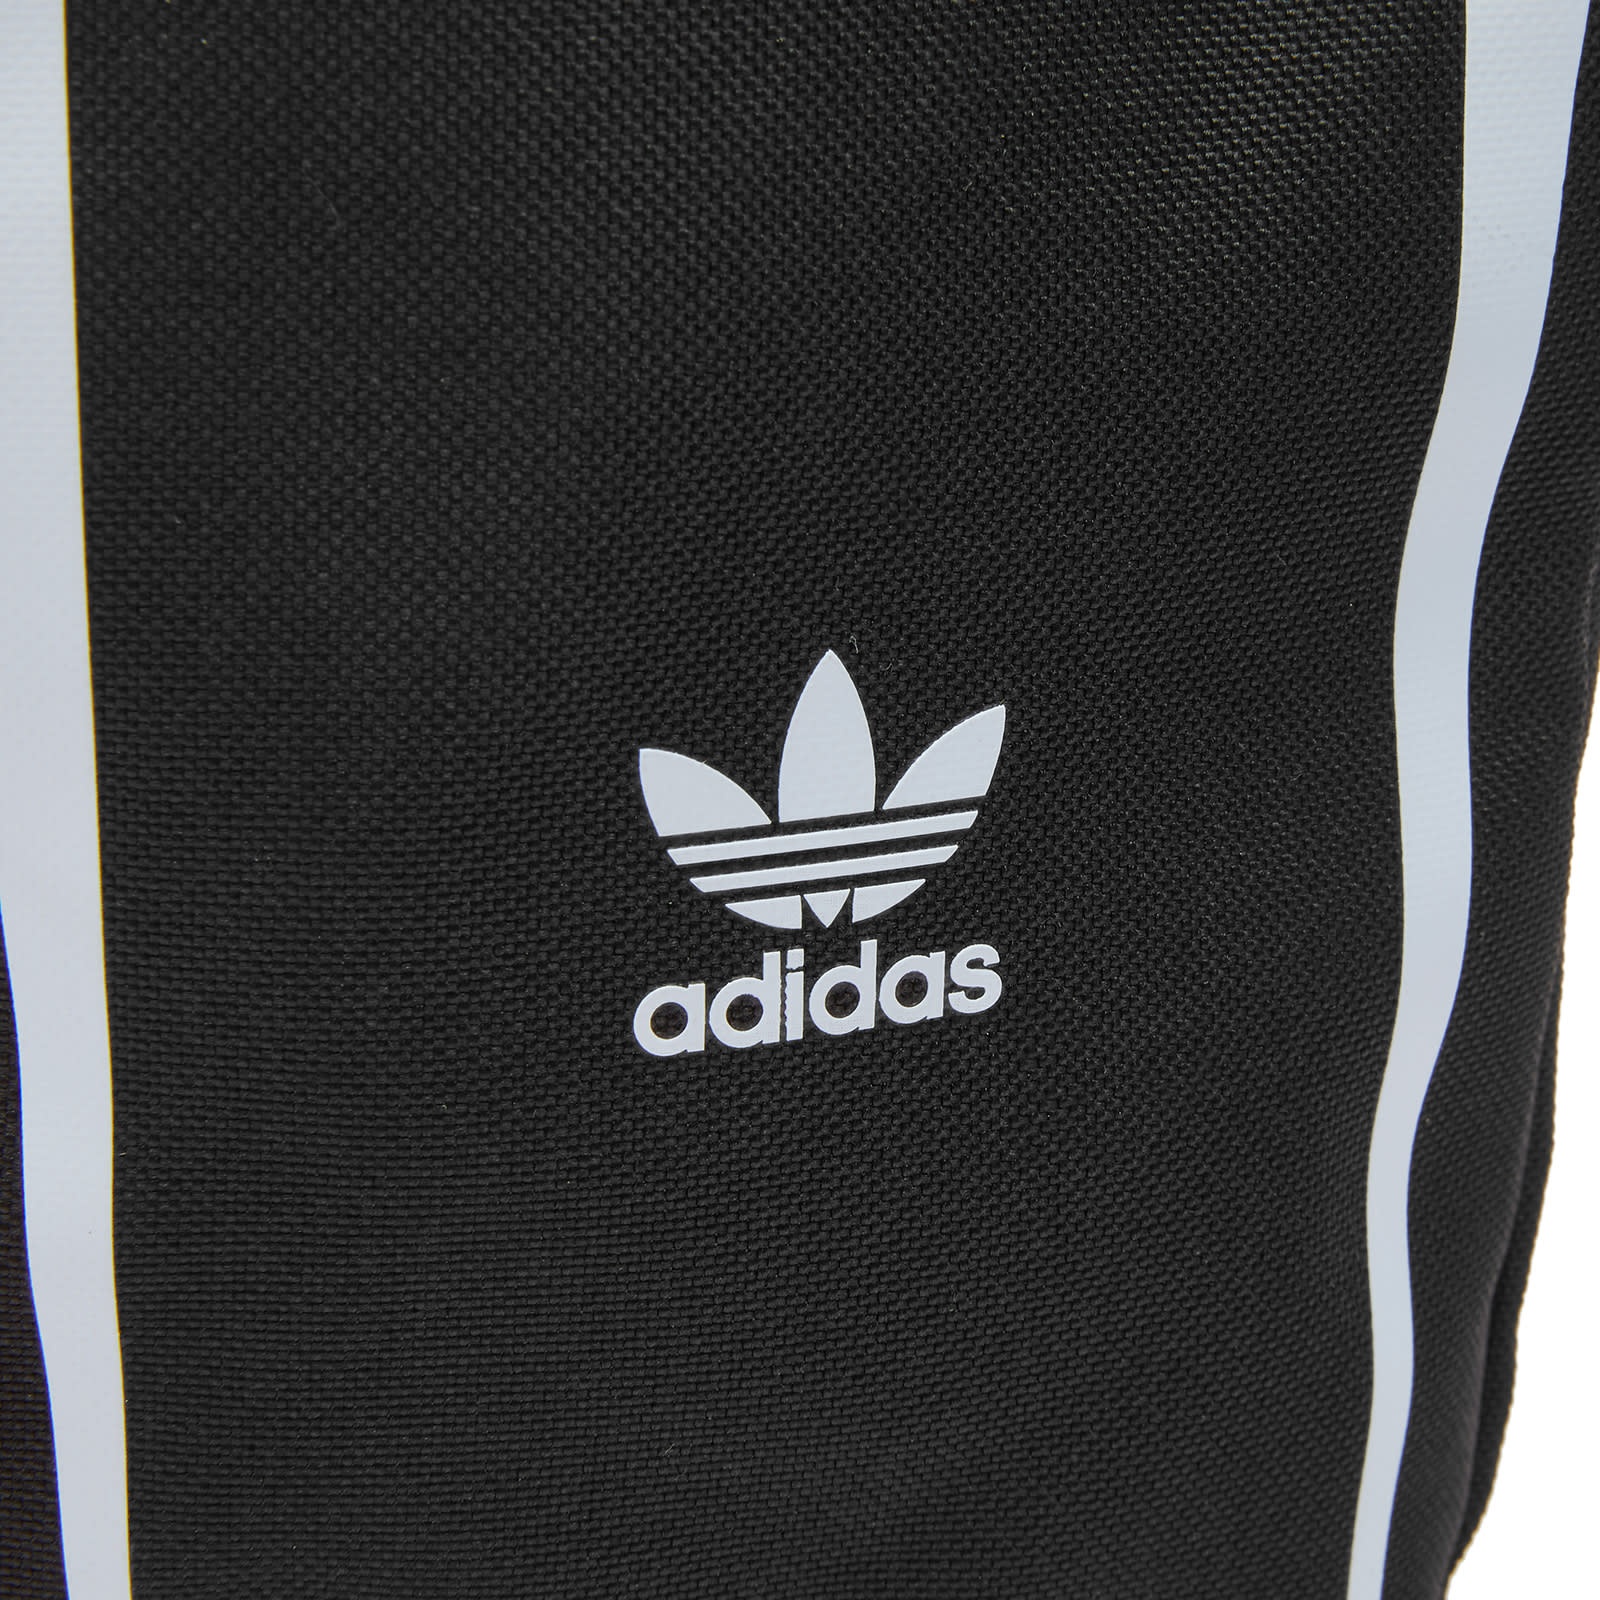 Adidas Retro Small Item Bag - 4